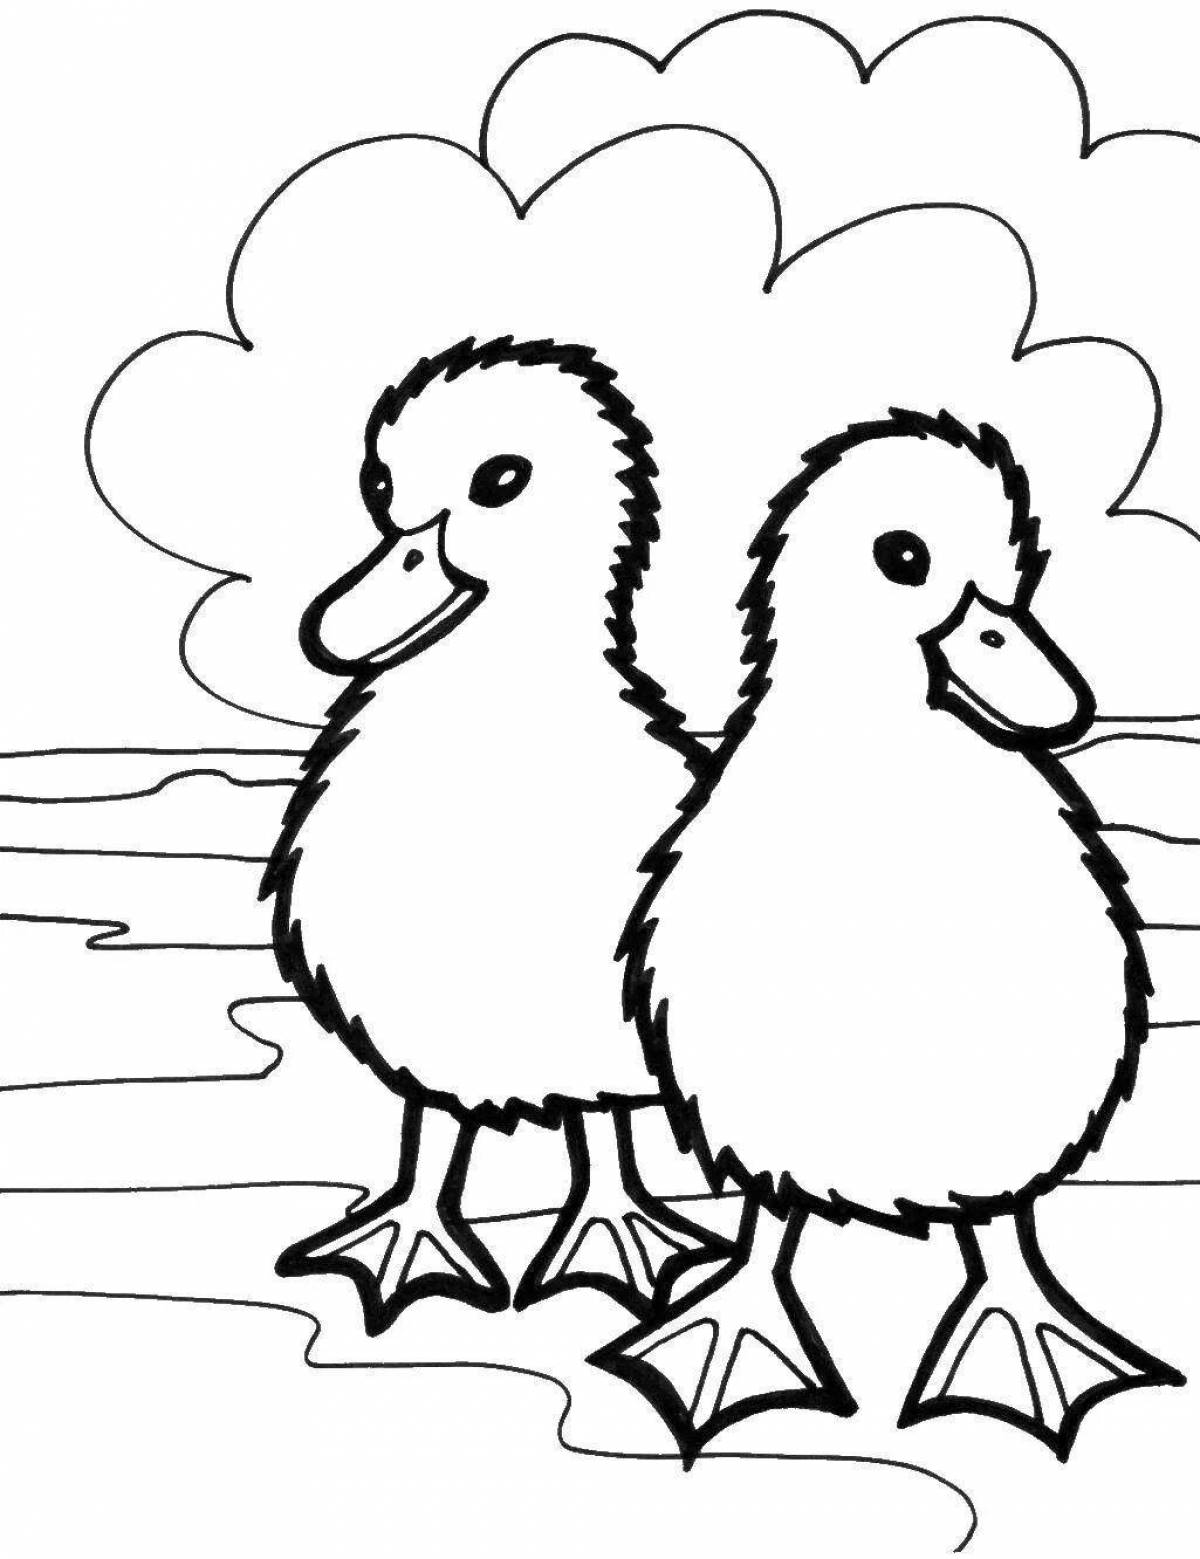 Unique poultry coloring page